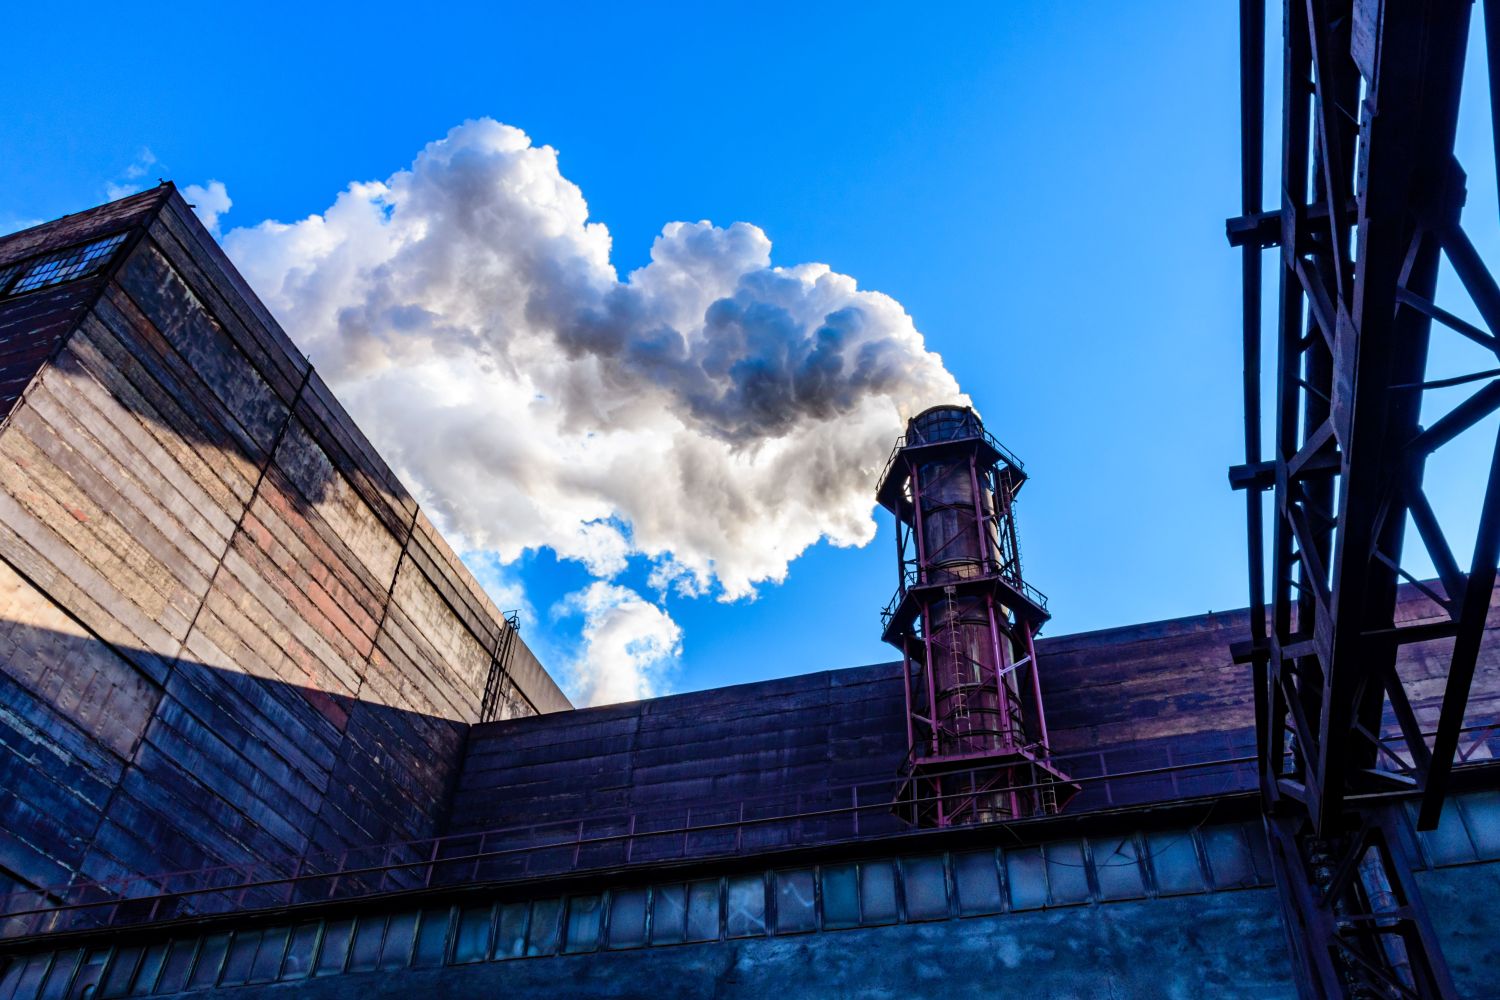 Factory smoke against a blue sky